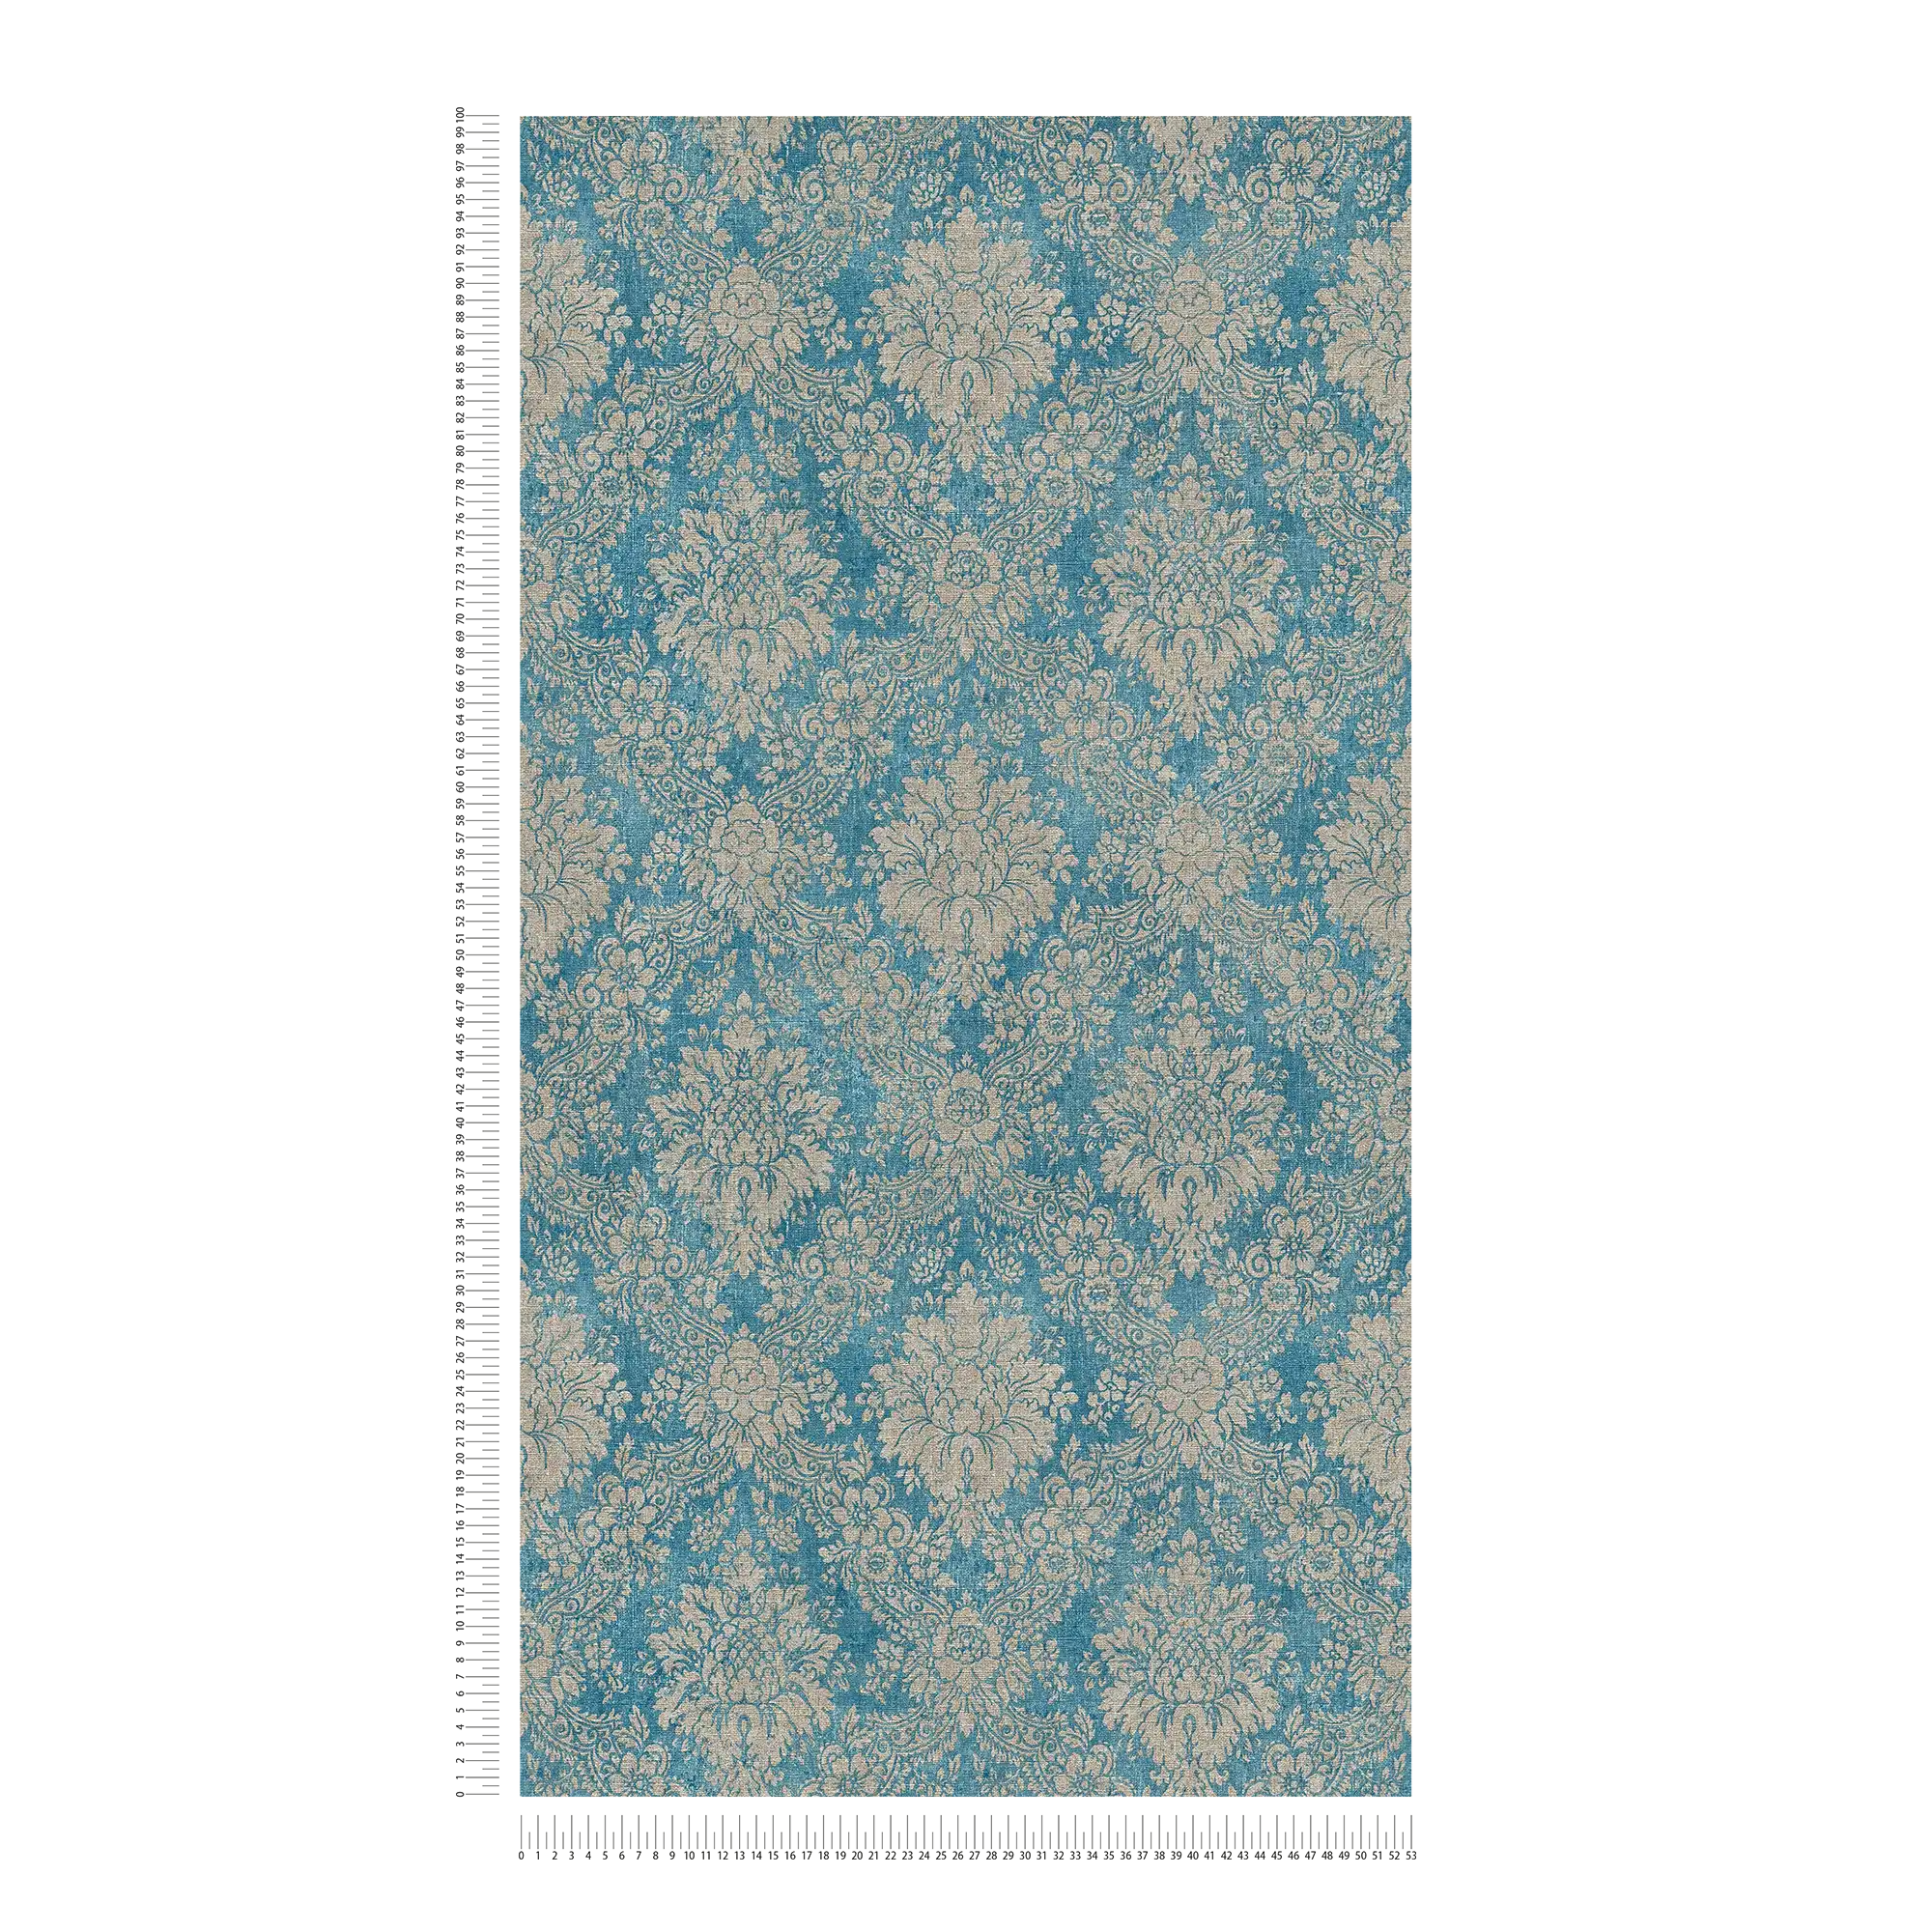             Papier peint ornemental floral avec effet métallique & aspect usé - bleu, marron, métallique
        